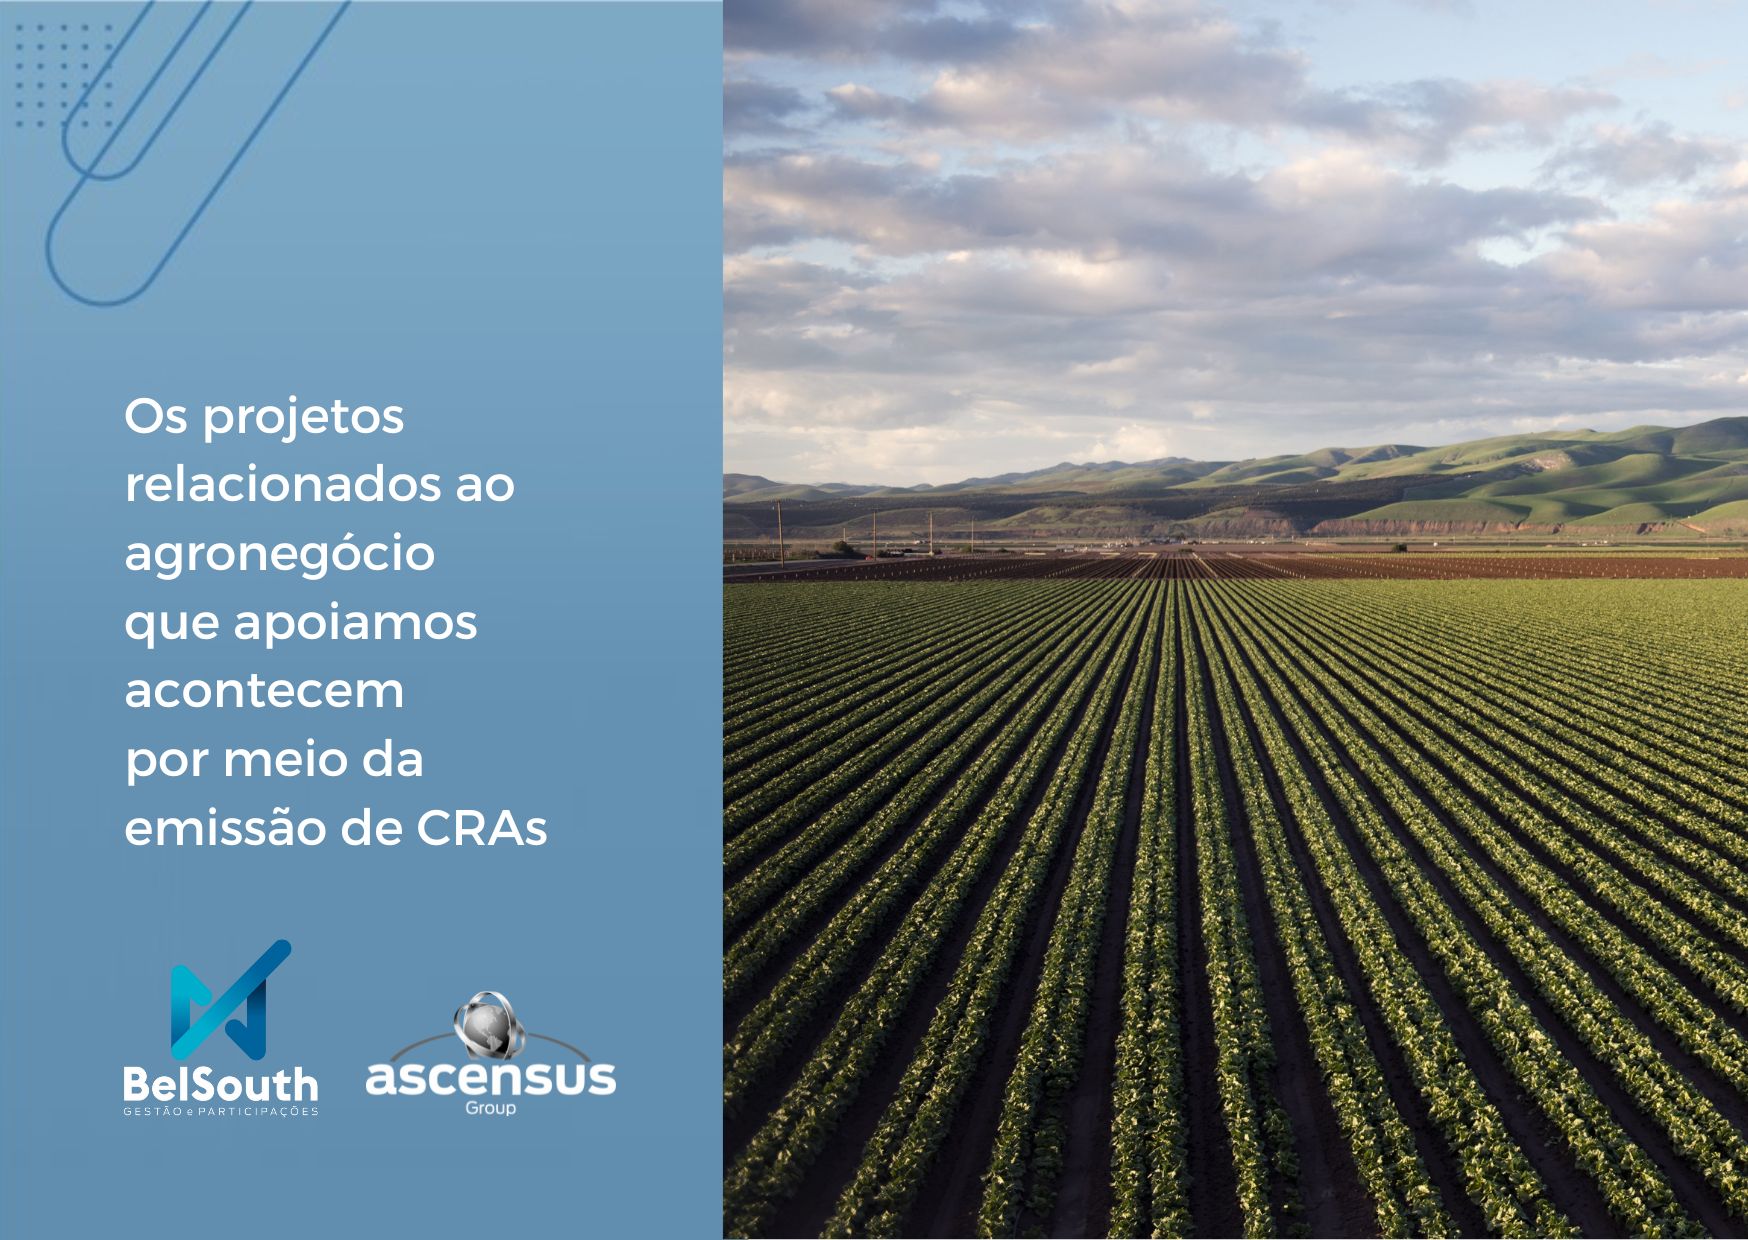 CRA – Certificado de Recebíveis do Agronegócio